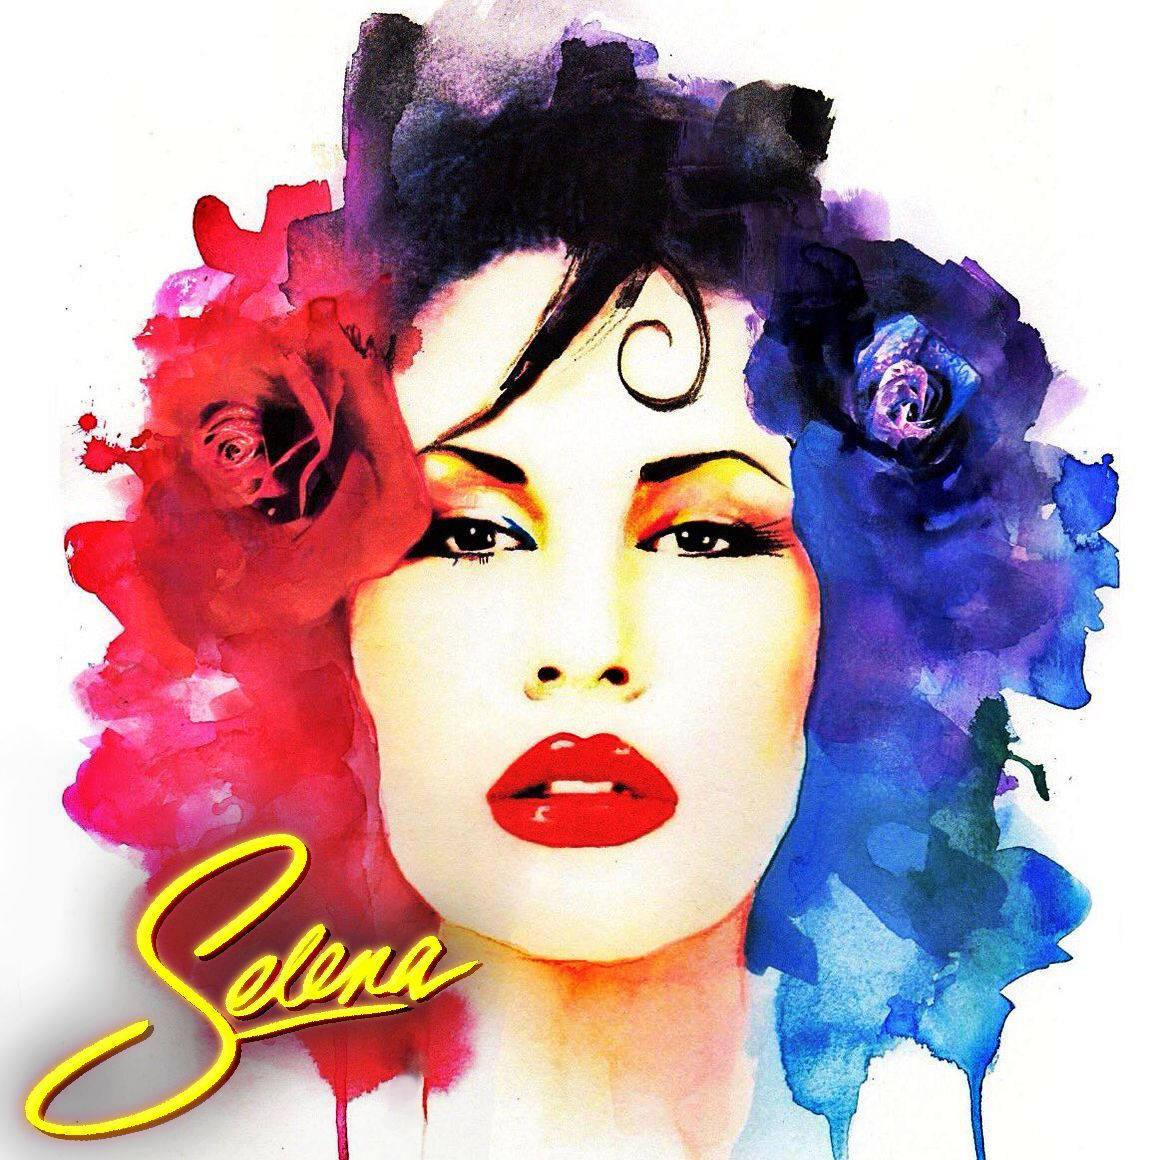 Colorful Selena Quintanilla Art Wallpaper